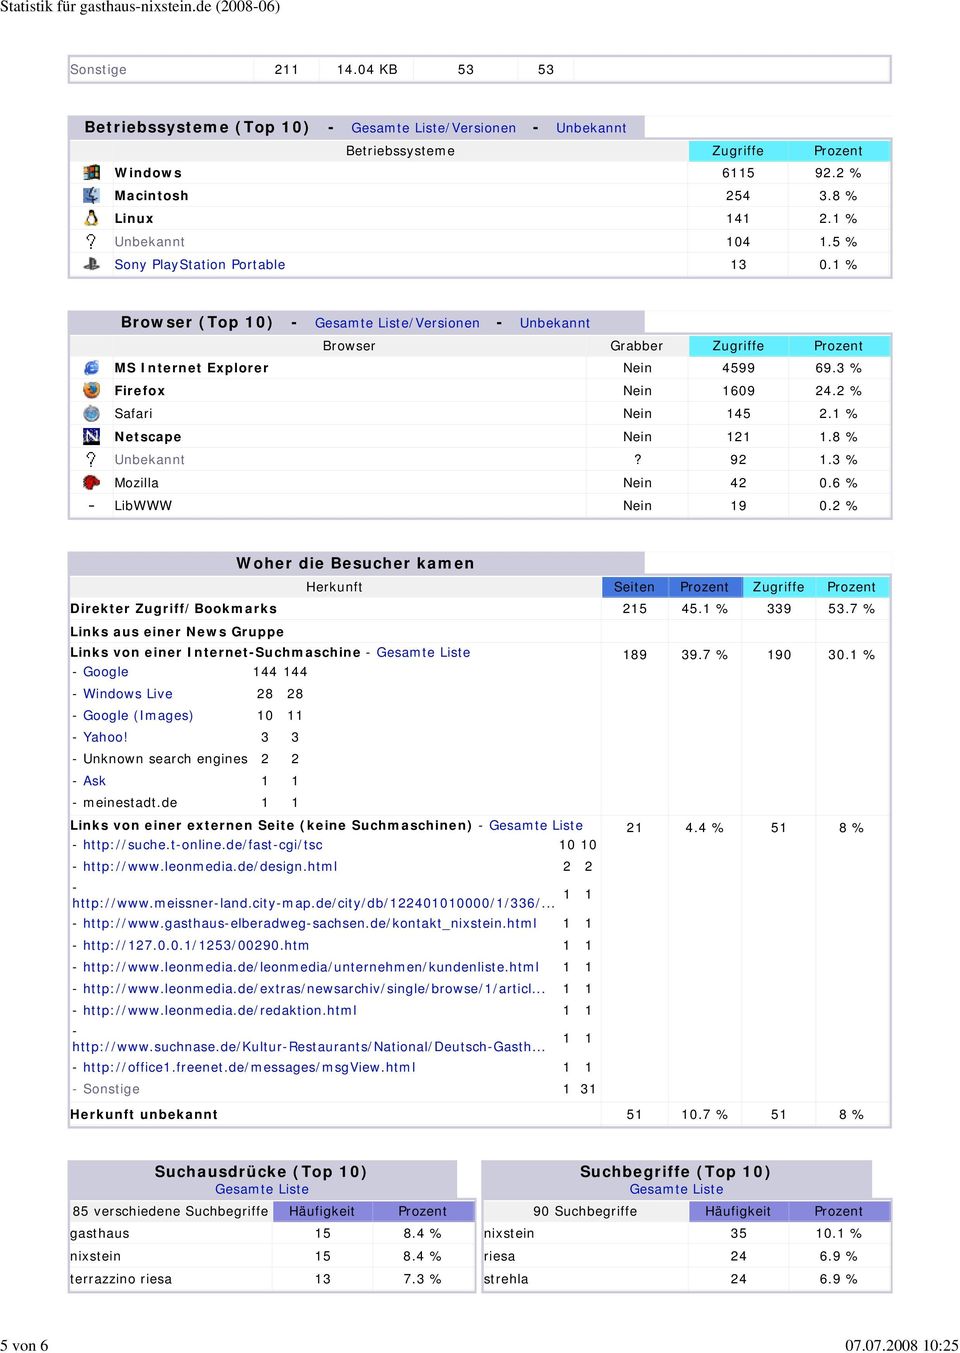 5 % Sony PlayStation Portable 13 0.1 % Browser (Top 10) - Gesamte Liste/Versionen - Unbekannt Browser Grabber Zugriffe Prozent MS Internet Explorer Nein 4599 69.3 % Firefox Nein 1609 24.